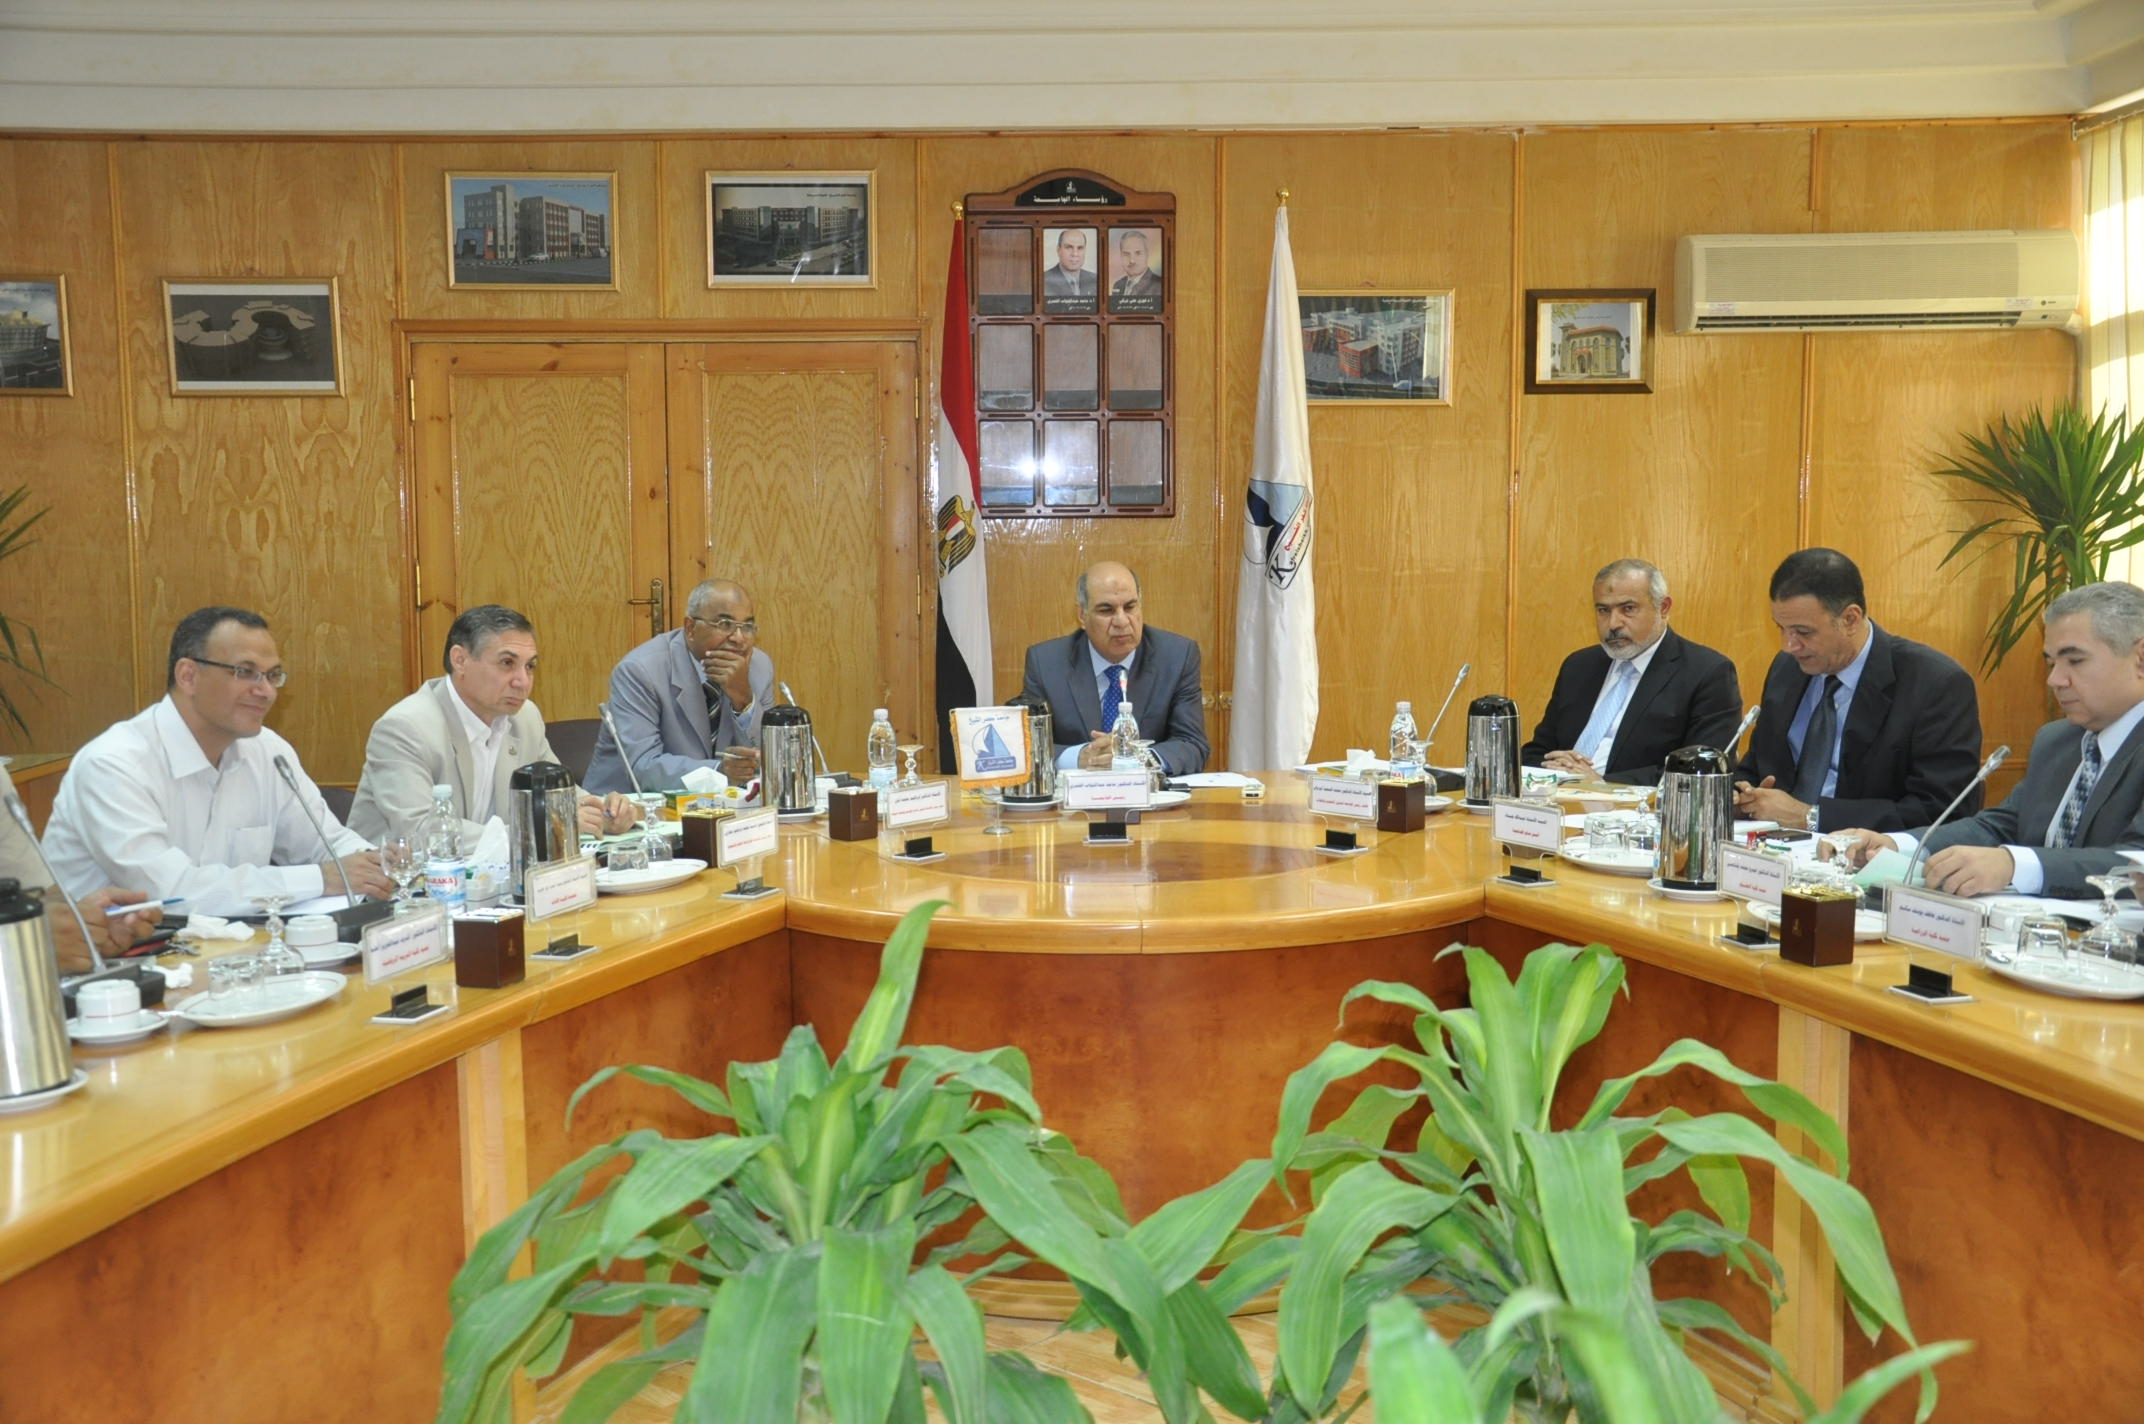  رئيس جامعة كفر الشيخ يوجه بسرعة إعلان جداول الامتحانات